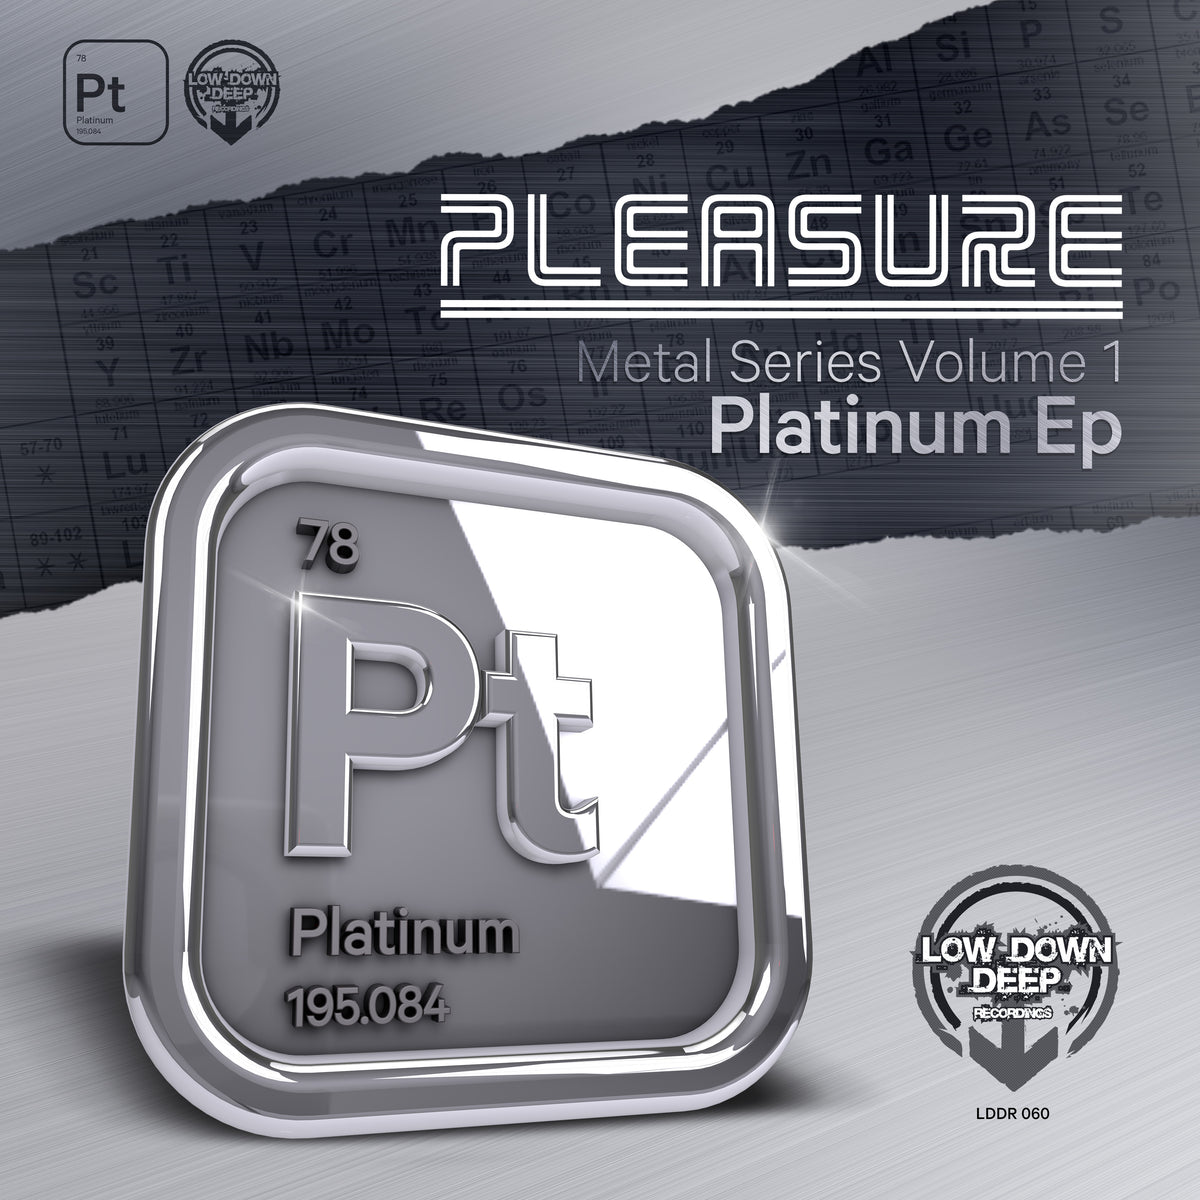 LDD 060 - Pleasure 'Platinum EP'